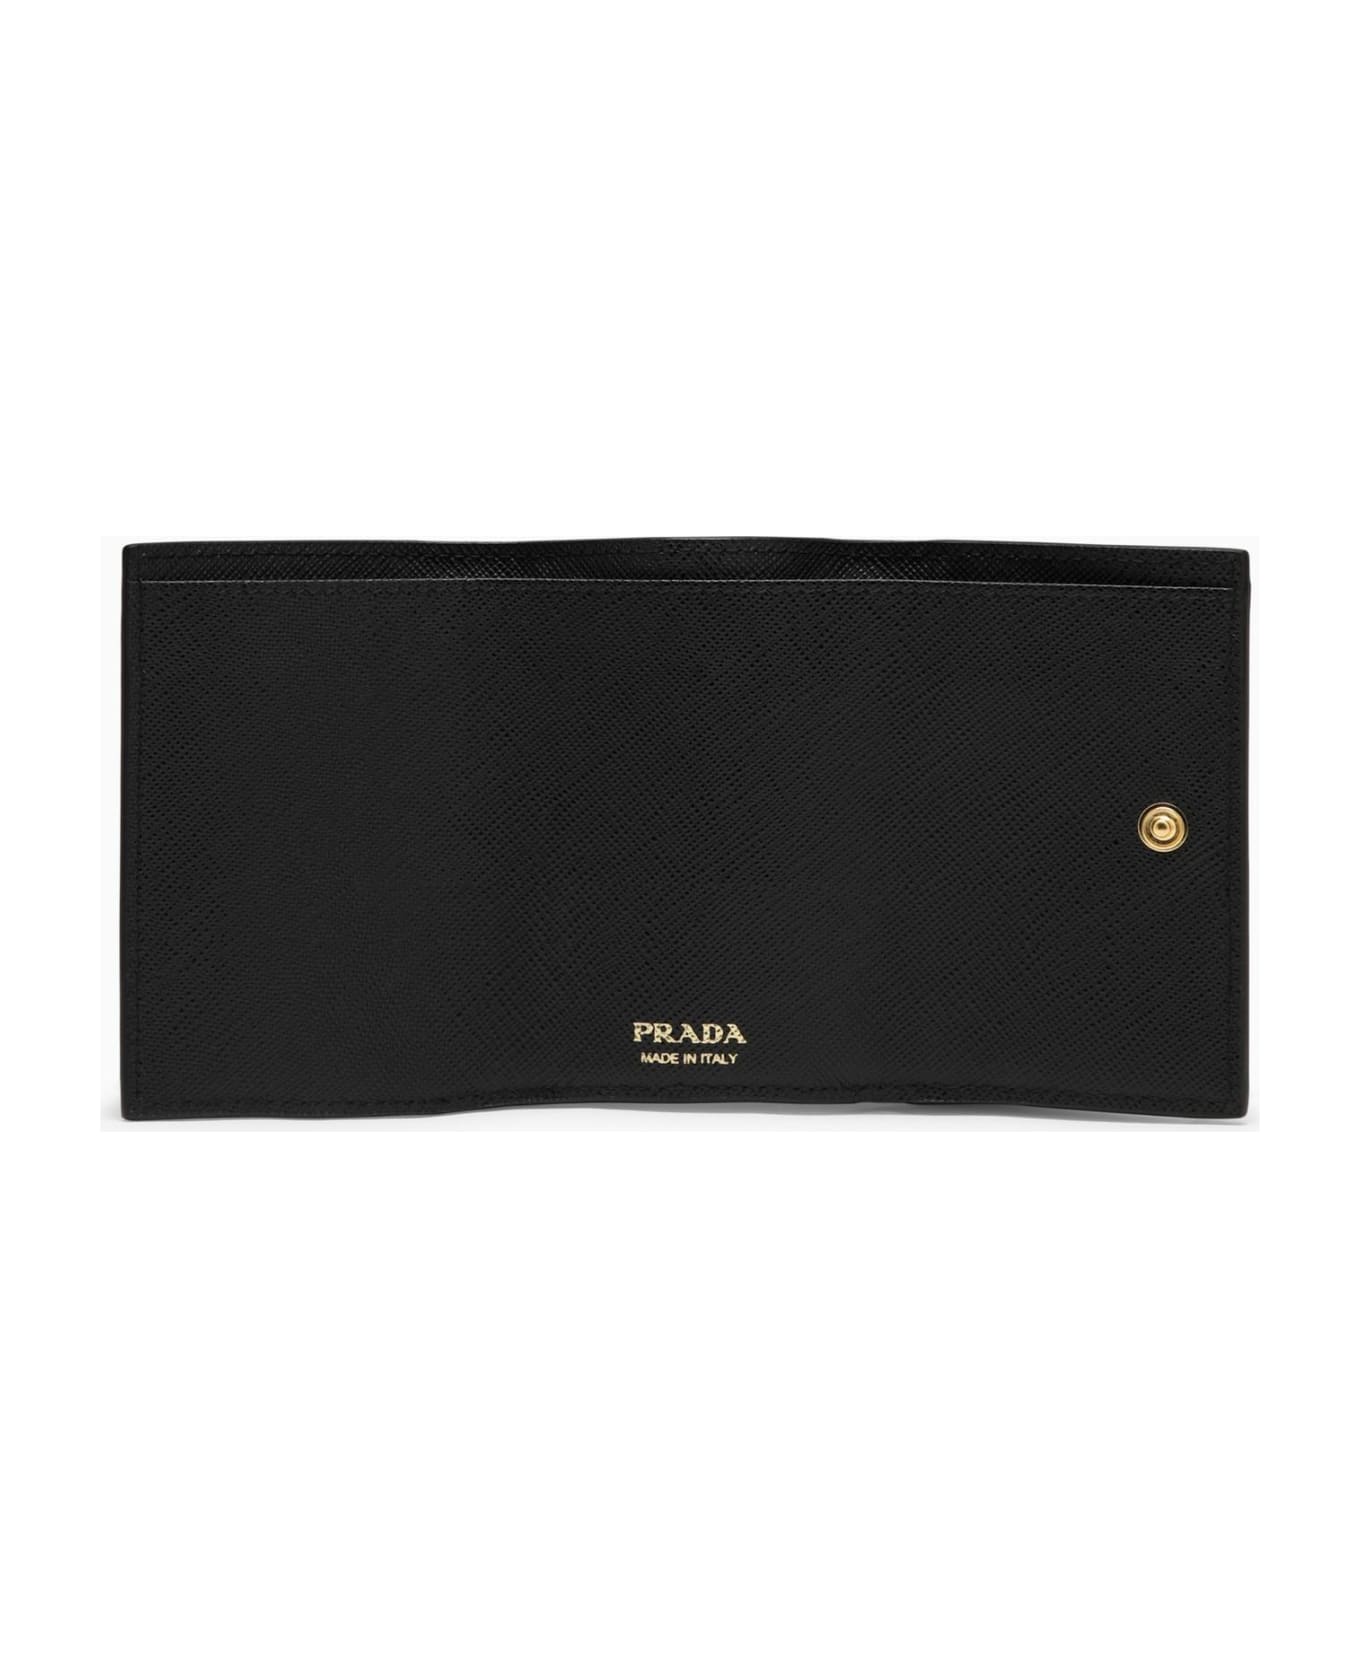 Prada Black Saffiano Leather Small Wallet - Nero